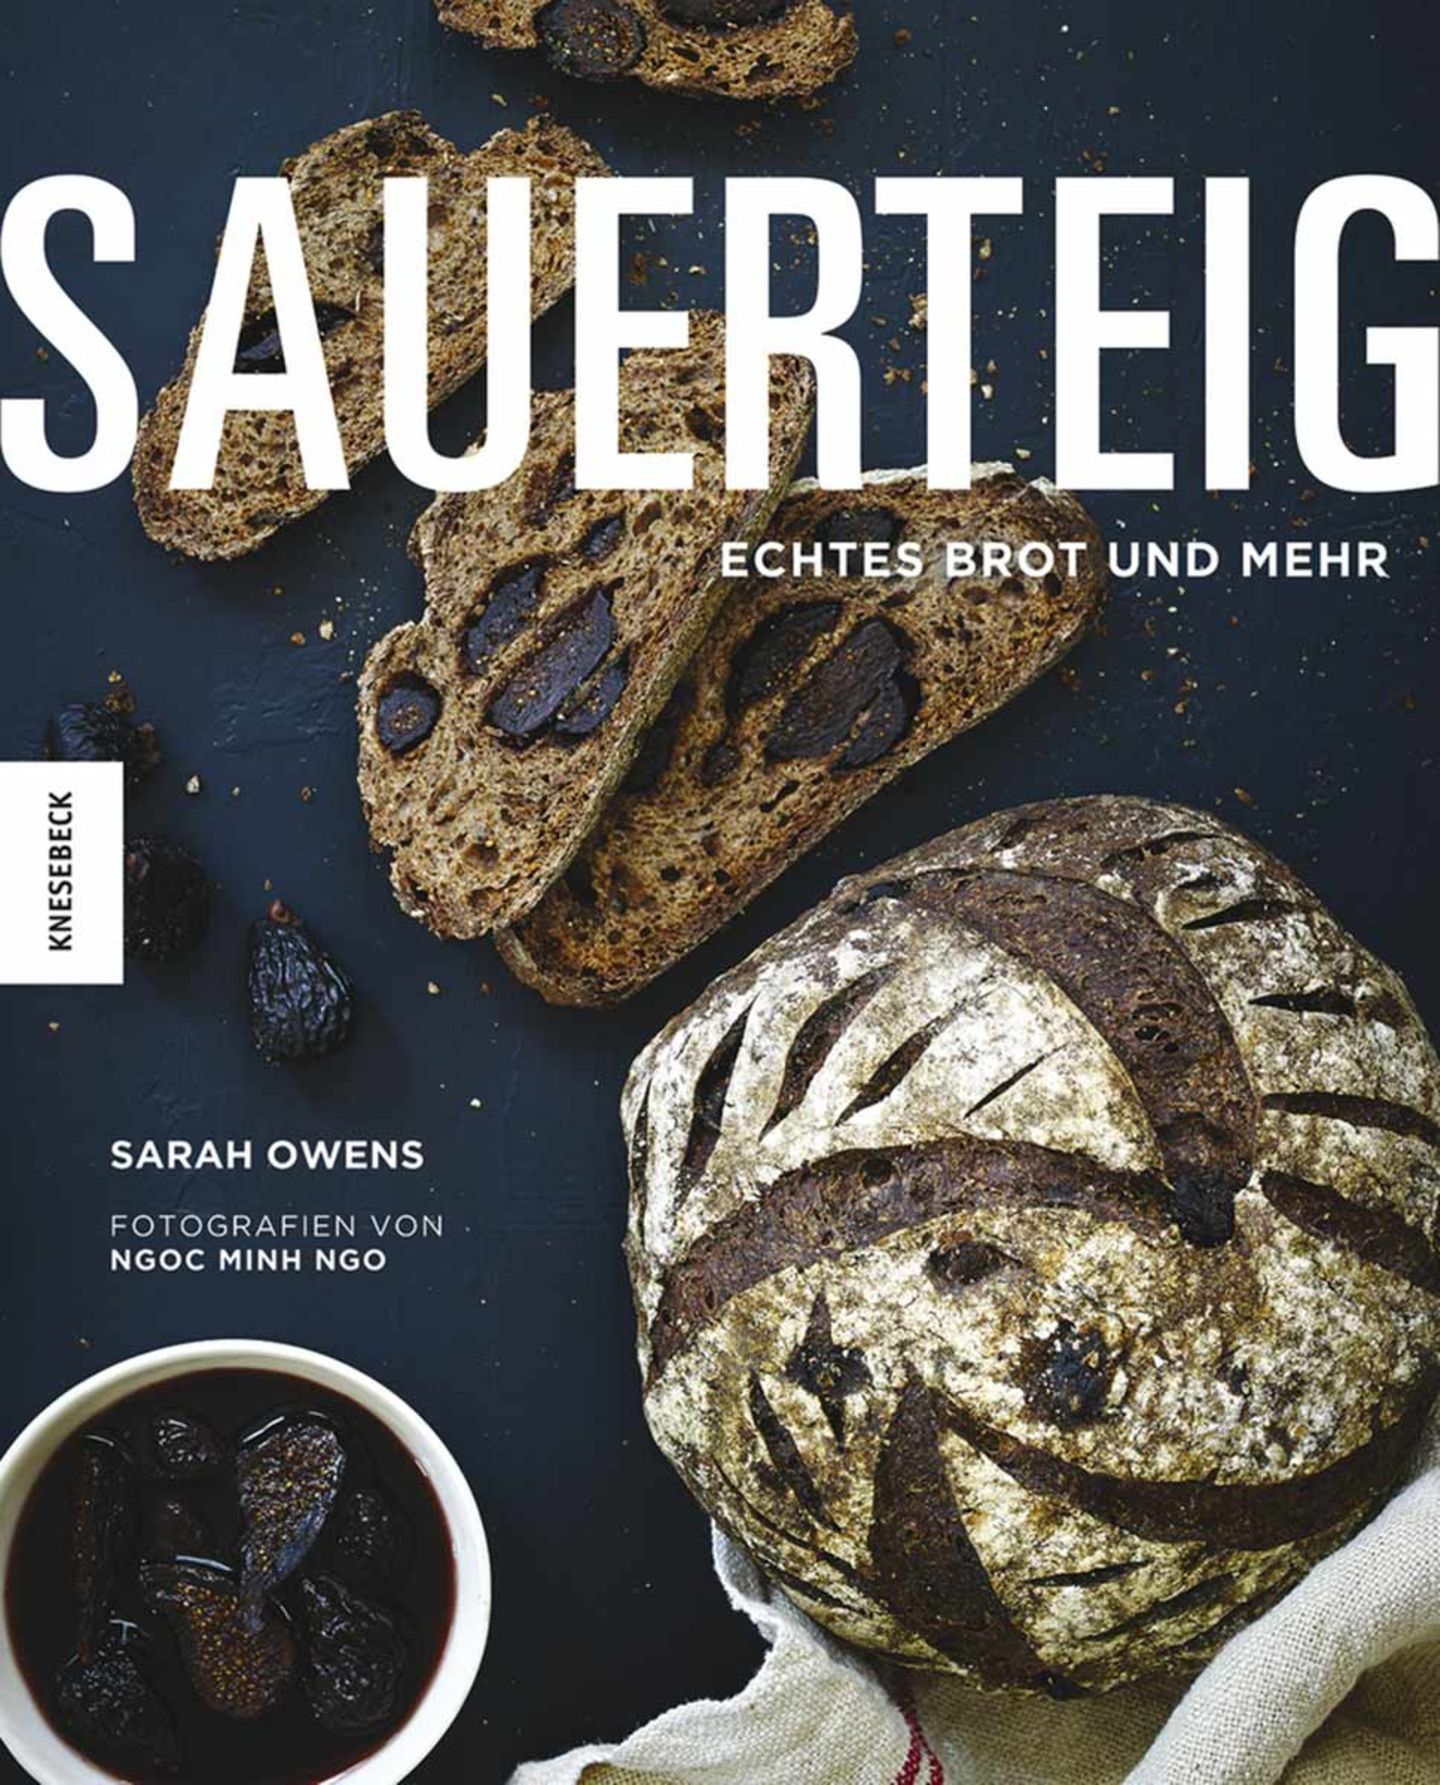 Kochbuch von Sarah Owens "Sauerteig"